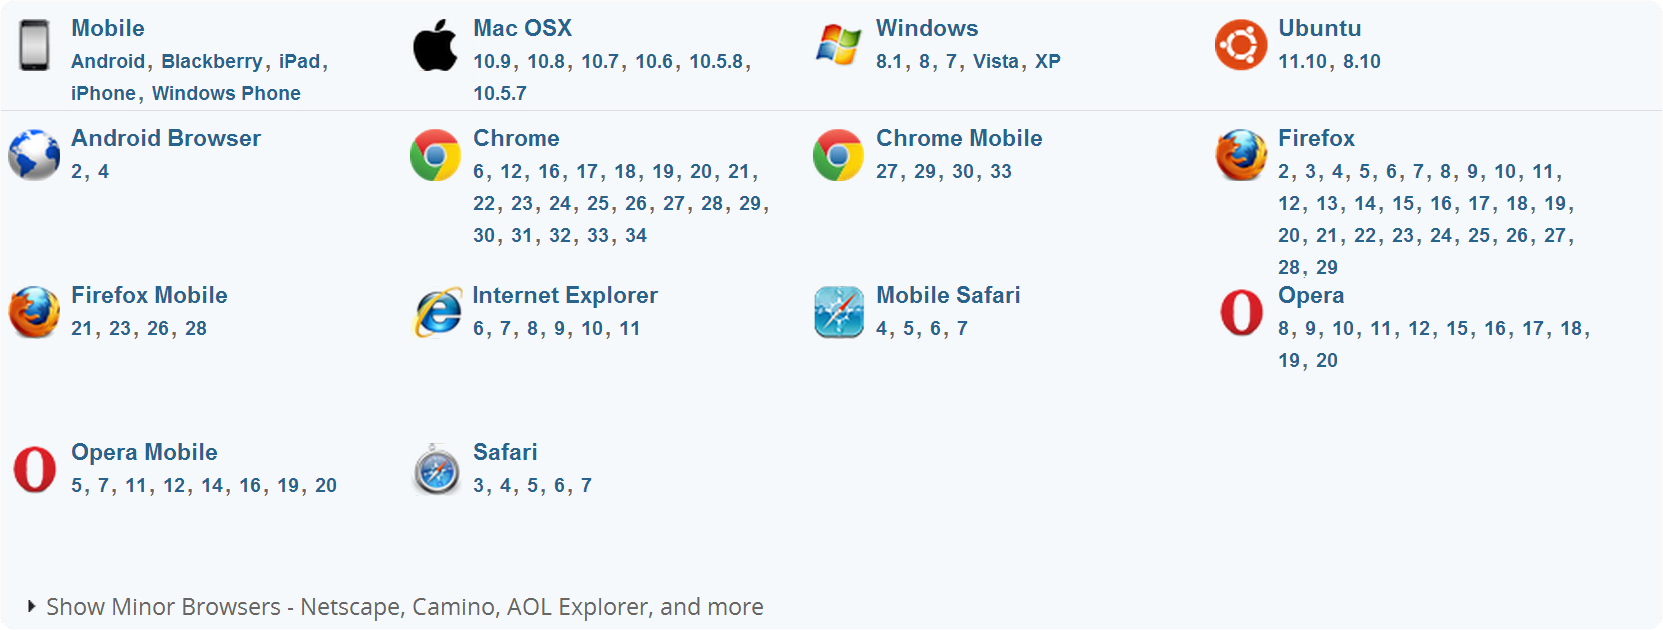 브라우저 종류 사진 - Andorid Browser, Chrome, Chrome Mobile, Firefox 등등